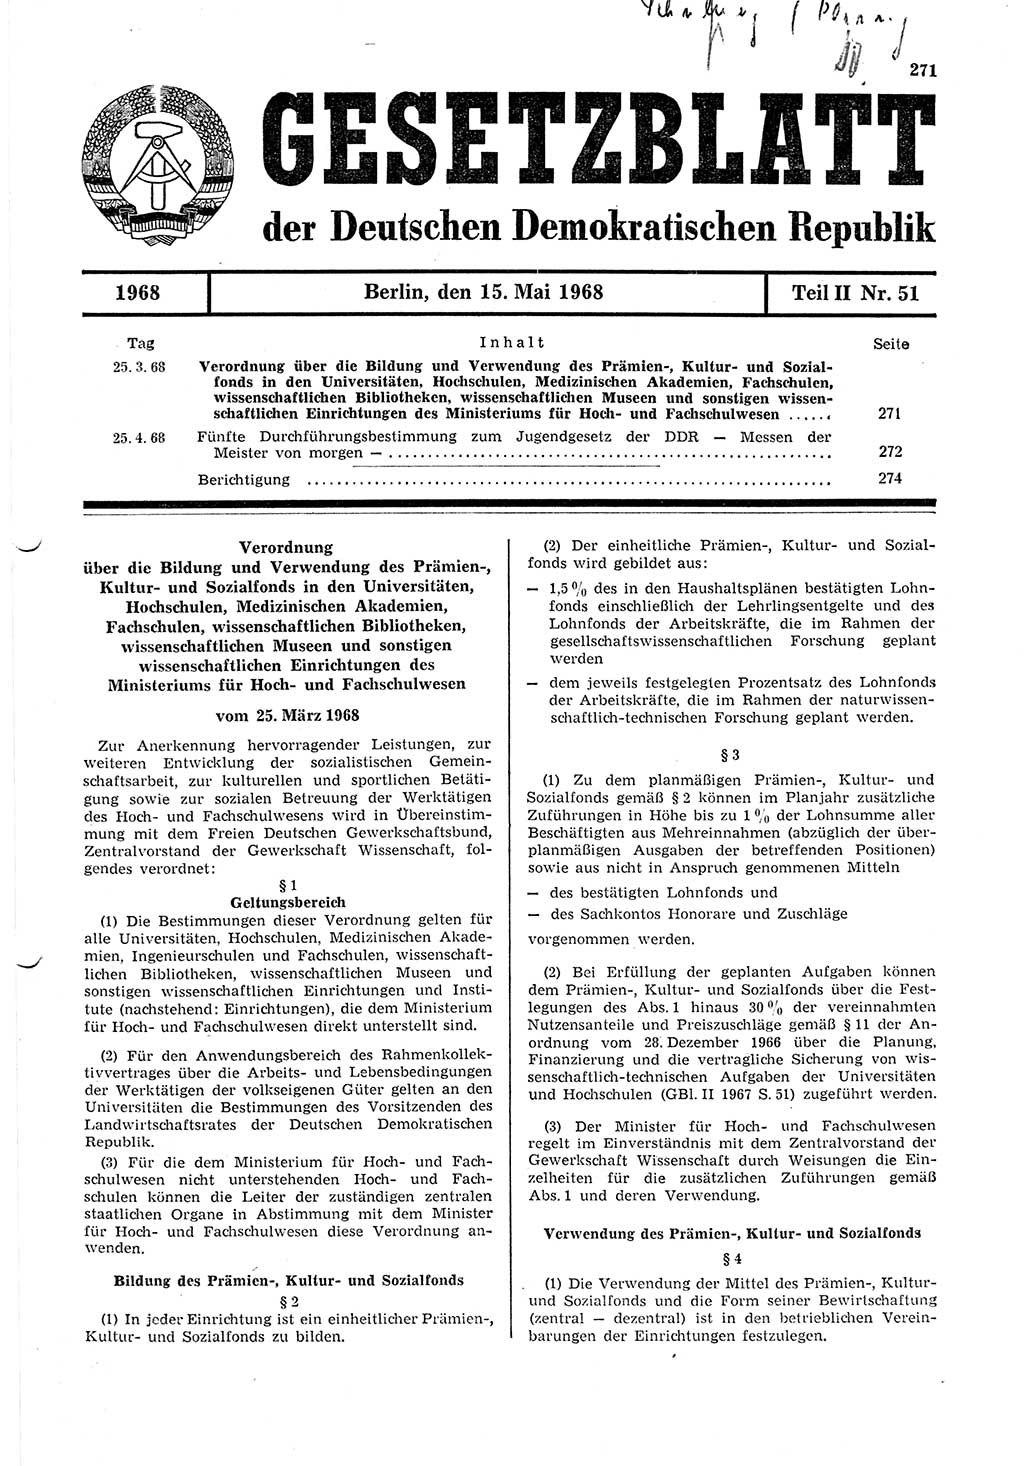 Gesetzblatt (GBl.) der Deutschen Demokratischen Republik (DDR) Teil ⅠⅠ 1968, Seite 271 (GBl. DDR ⅠⅠ 1968, S. 271)